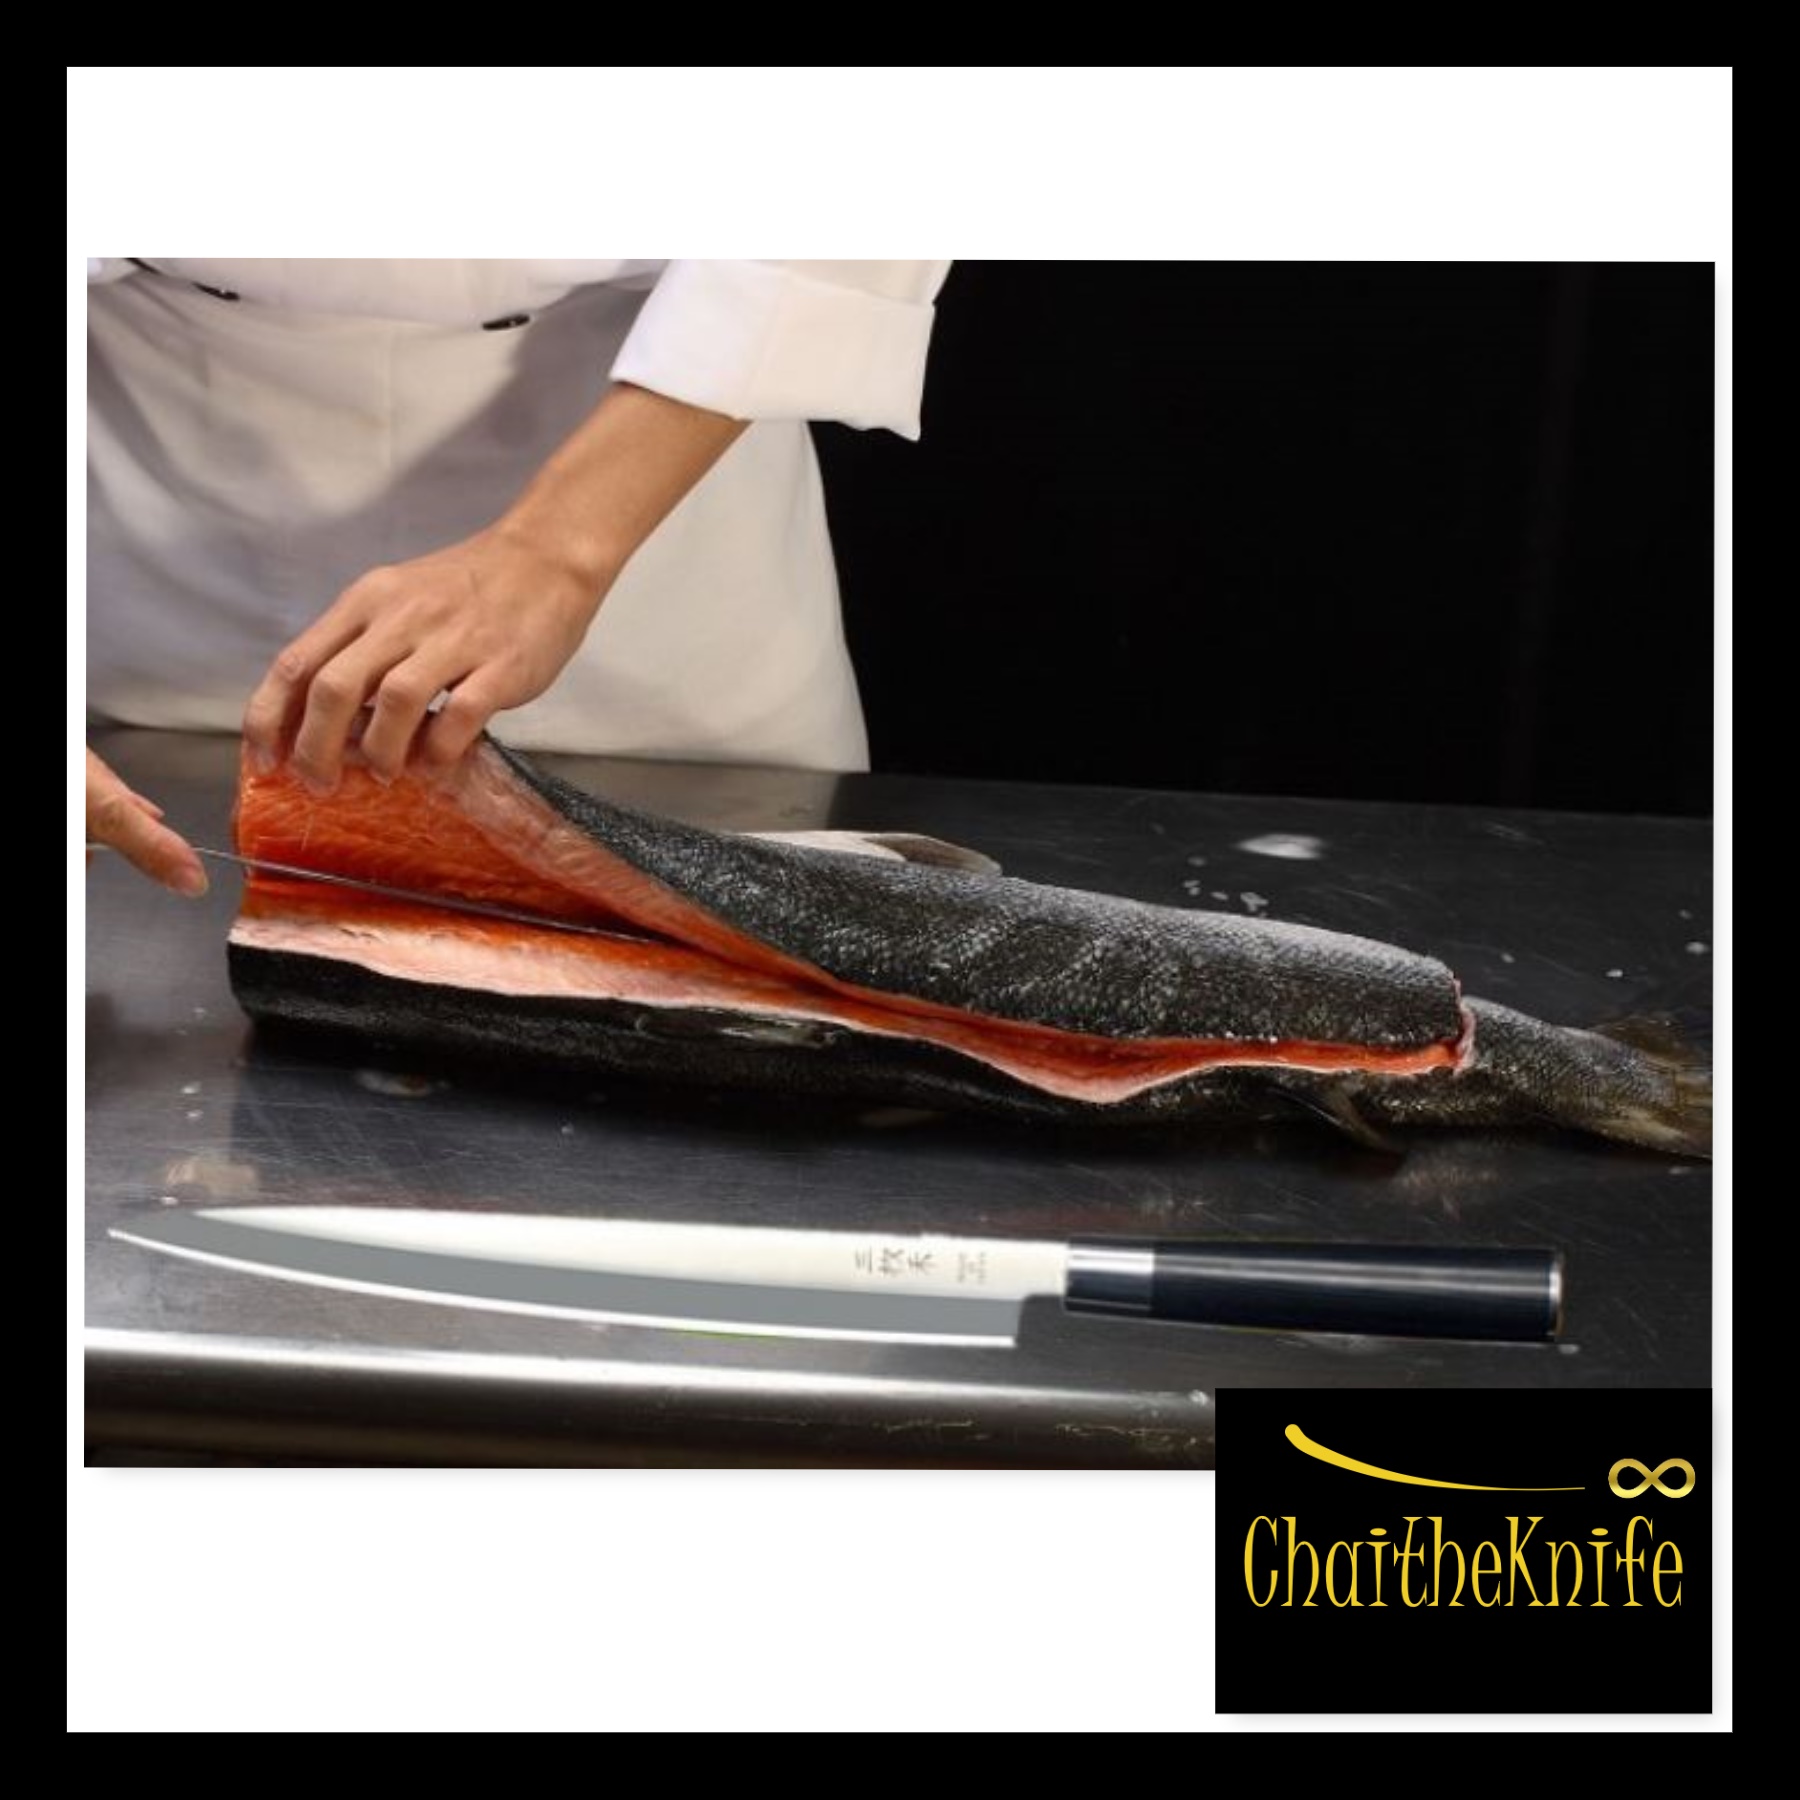 มีดเชฟ ญี่ปุ่น ยานากิบะ Japanese Fish Knife Yanagiba ใบมีดยาว 33 เซ็นติเมตร ยาวที่สุดในรุ่น ด้ามจับ G10 เกรดพรีเมี่ยม Japanese Yanagiba Fish Knife 33 cm longest one G10 handle